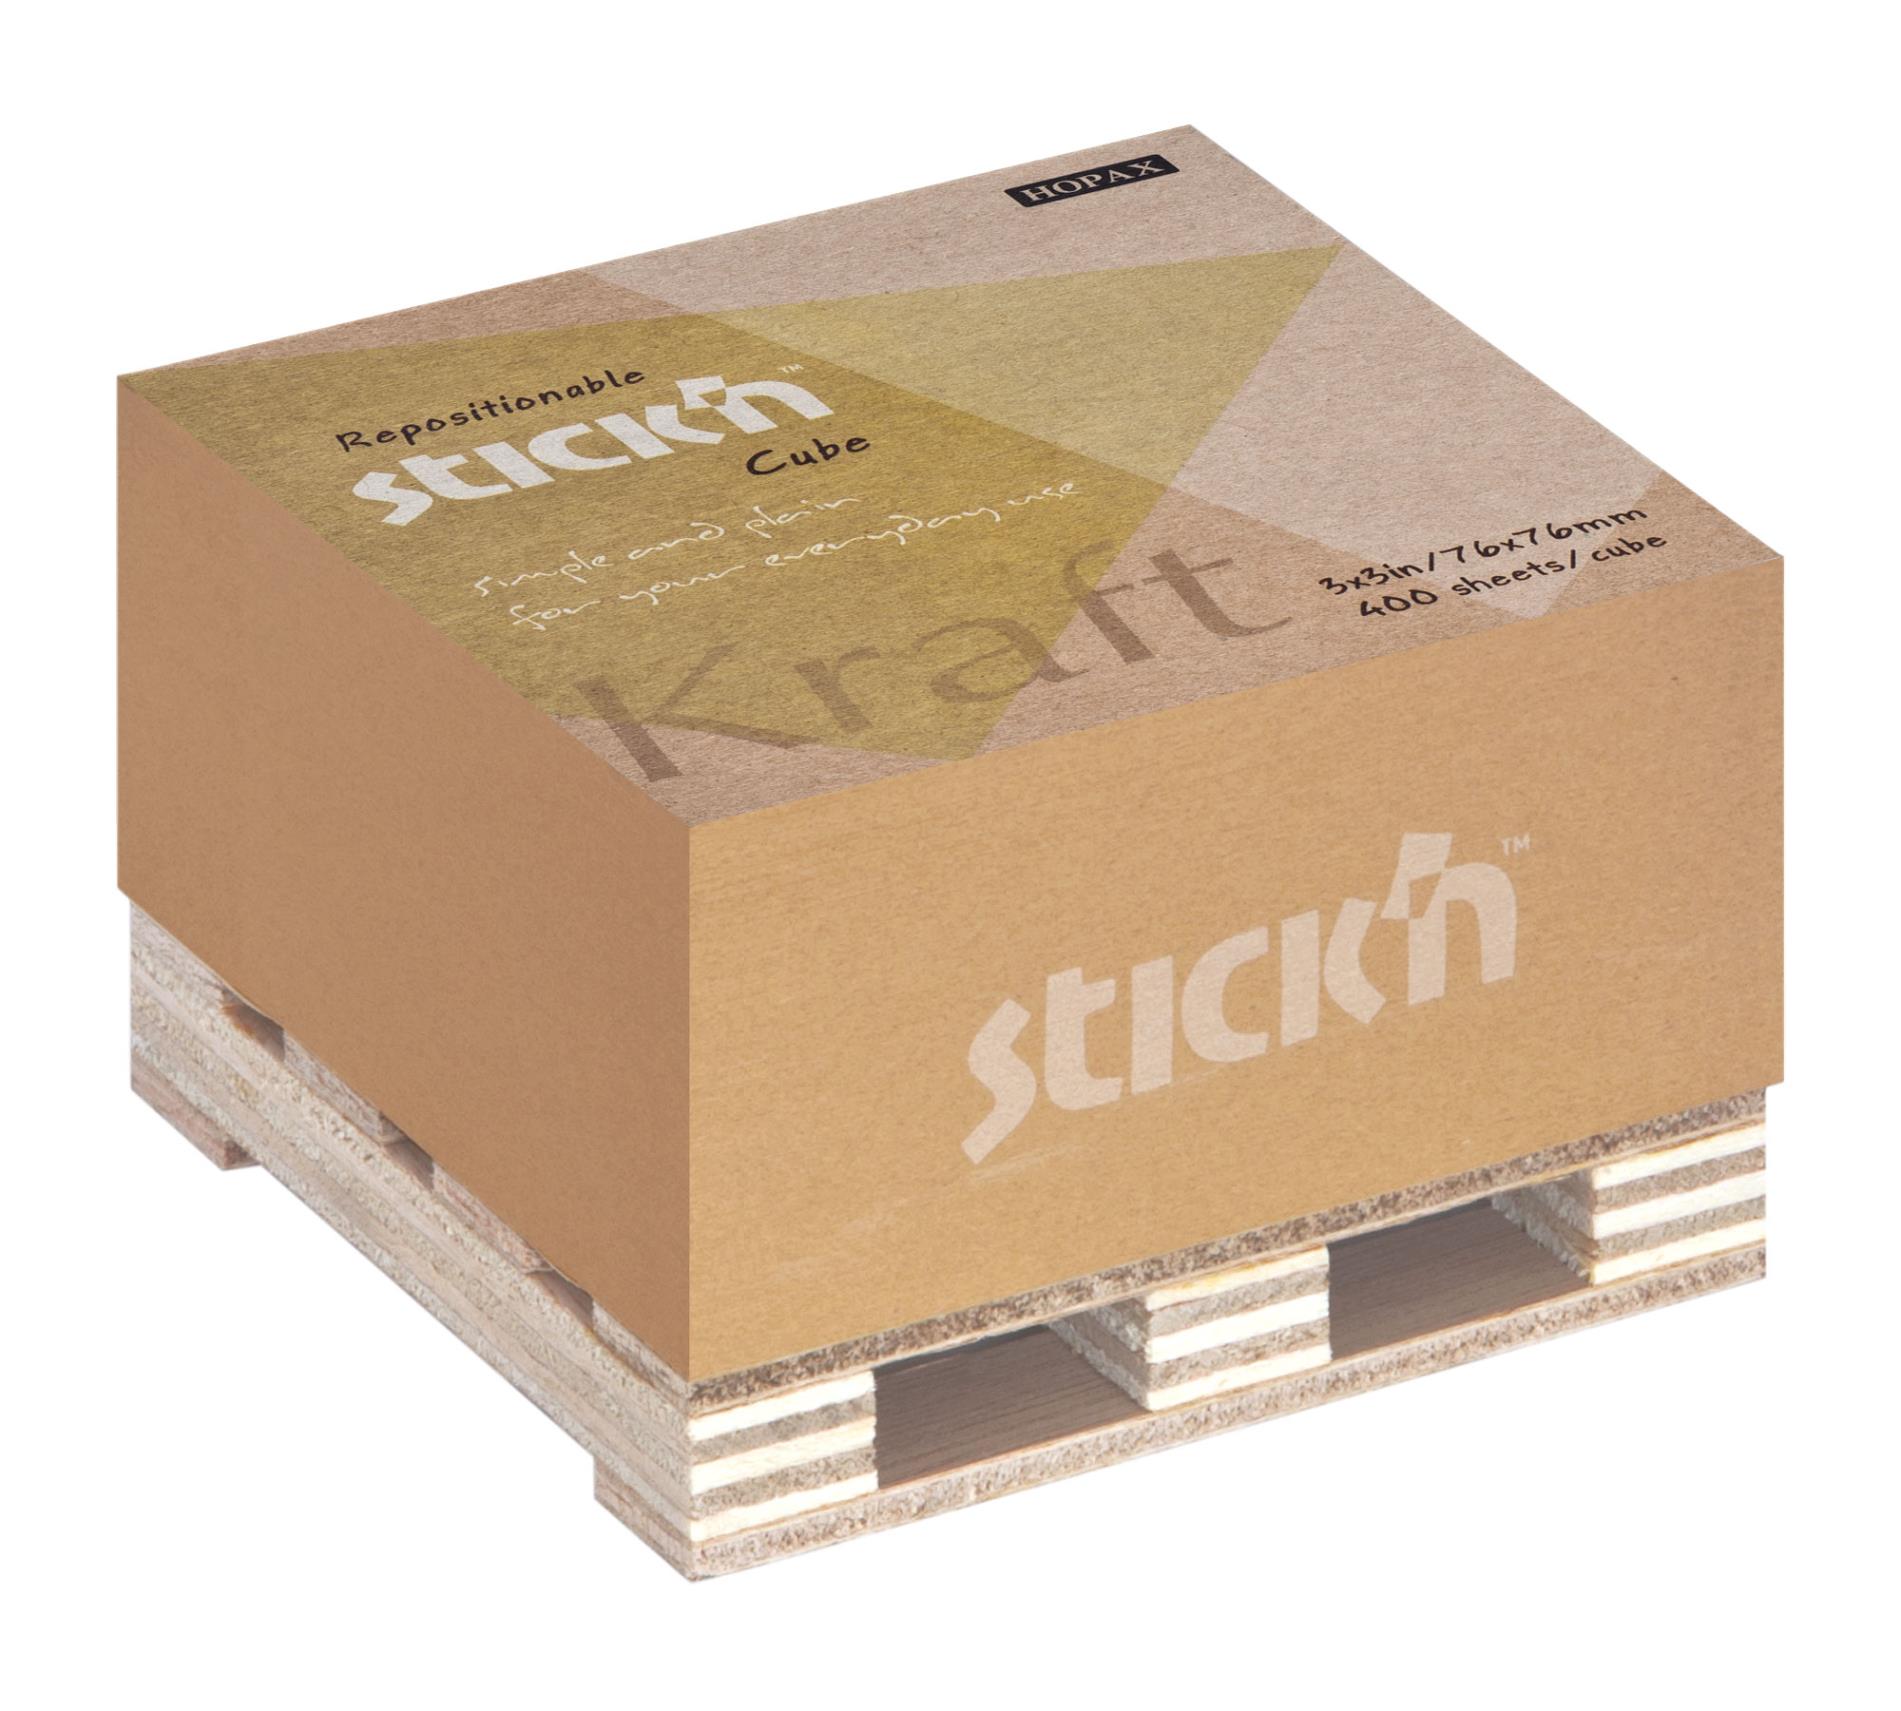 Stick’n by Hopax Samolepicí bloček na paletce Stick'n Kraft z přírodního papíru - 76 x 76 mm, 400 lístků